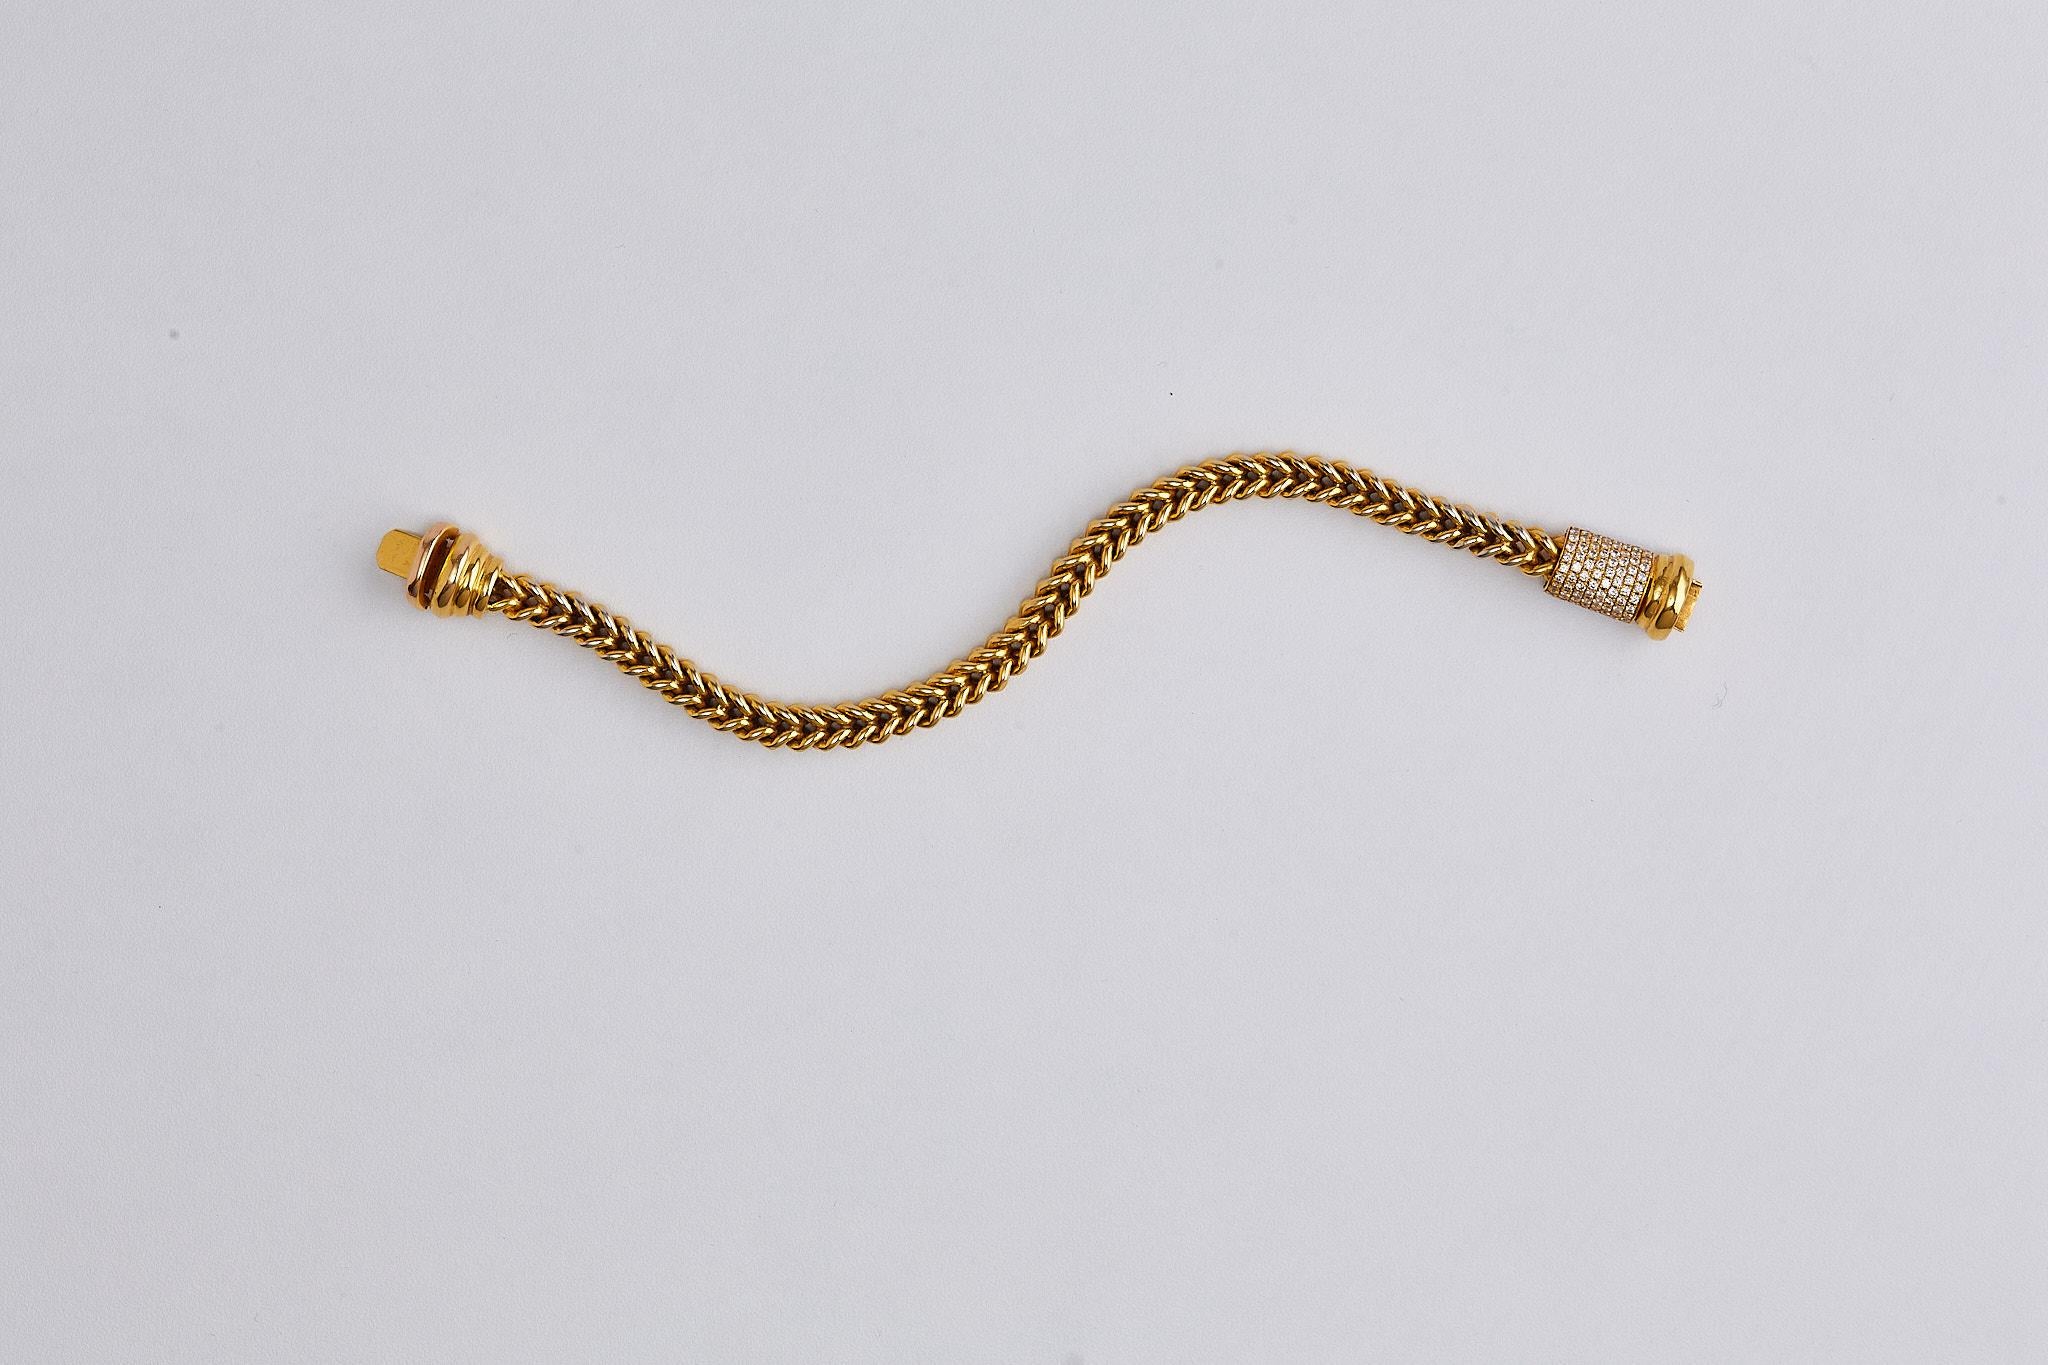 bracelet en chaîne en or jaune 14 carats avec un fermoir en diamants 

Ce bracelet classique à chaîne est fabriqué en or jaune 14 carats et la chaîne se termine par un superbe fermoir à diamants. 
1.diamants taille ronde de 05 carats. 

Poids total